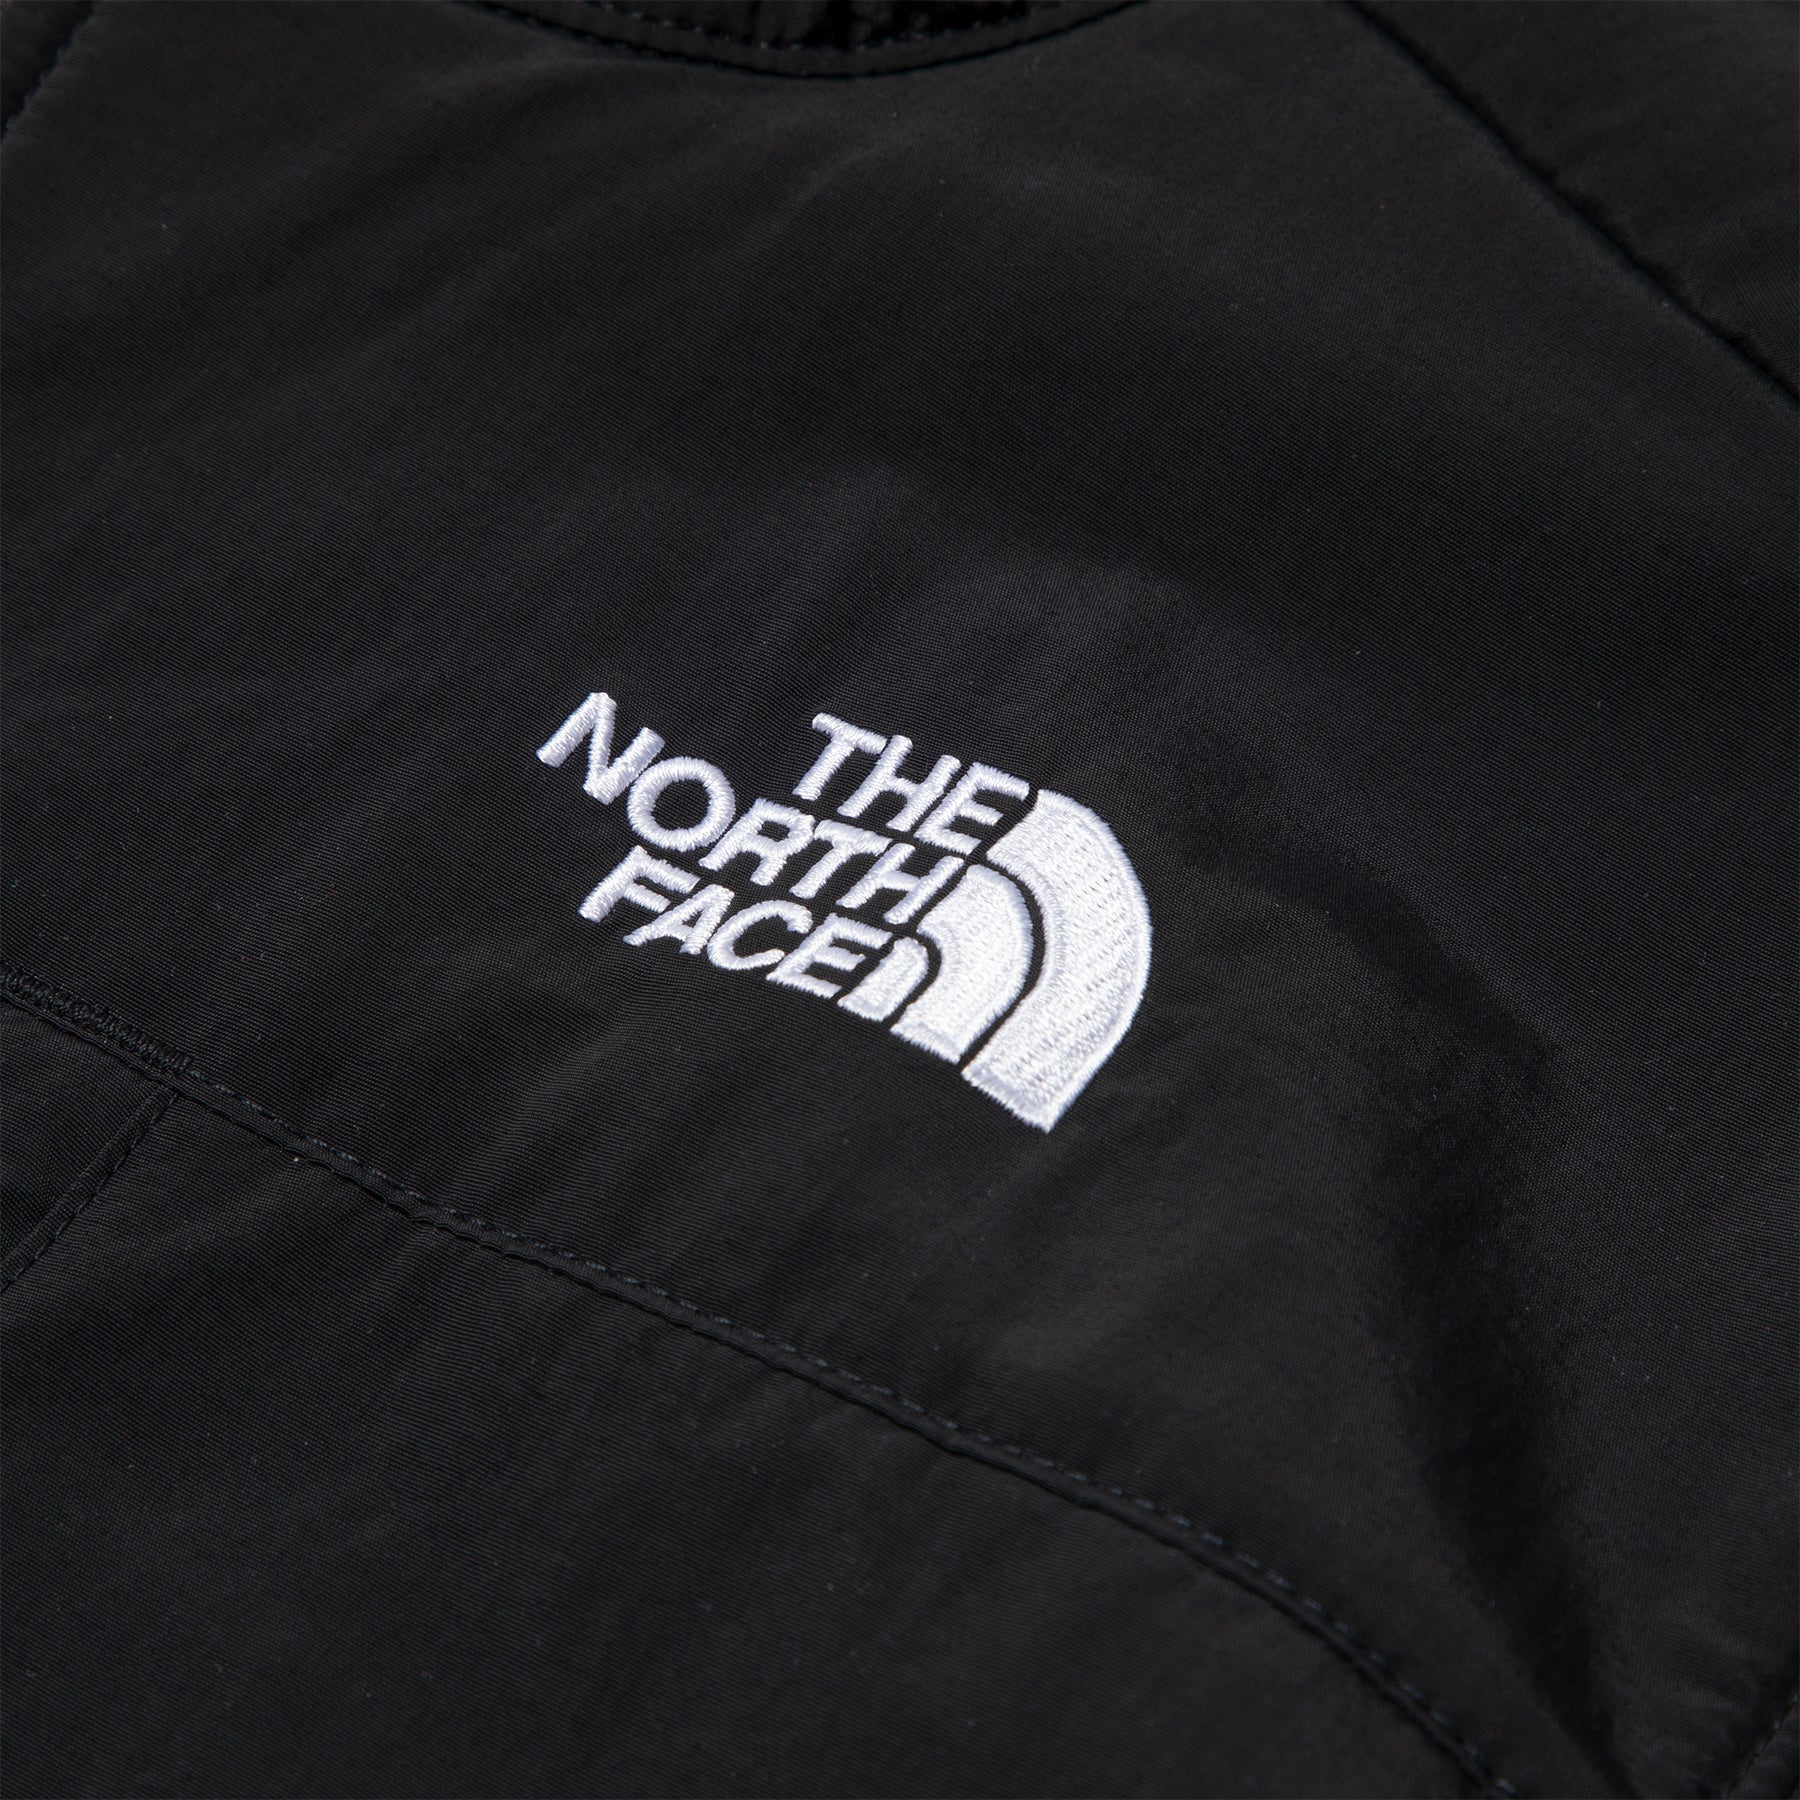 The North Face Denali Jacket (Black)